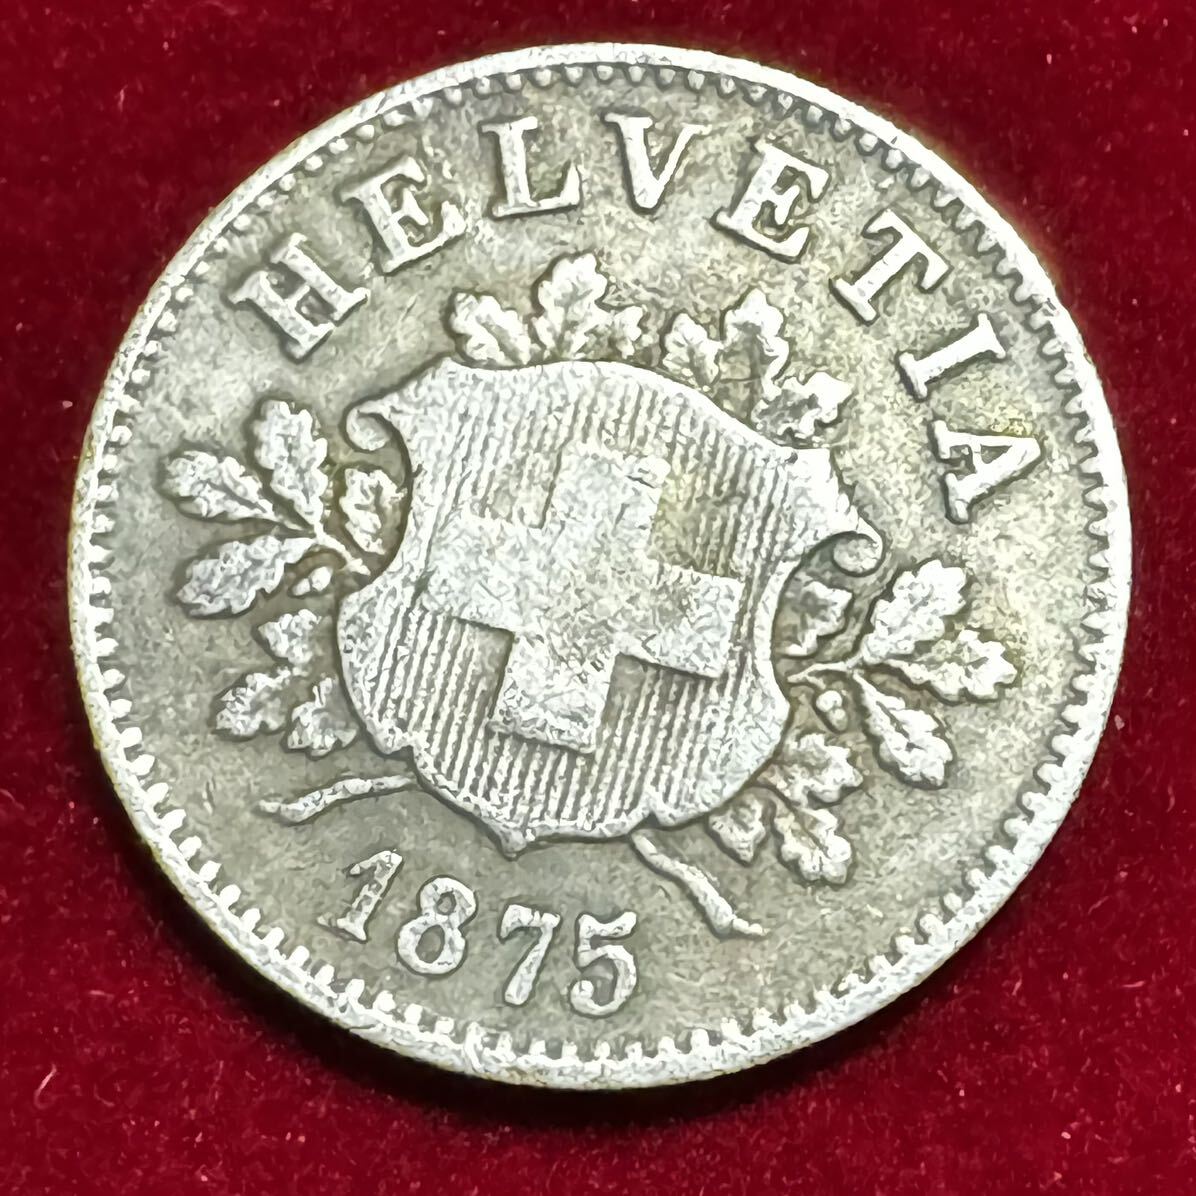 スイス 紋章シリーズ 硬貨 古銭 1875年 10ラッペン ヘルベティア 国章 盾 樫の枝 コイン 銀貨 外国古銭 海外硬貨 の画像1